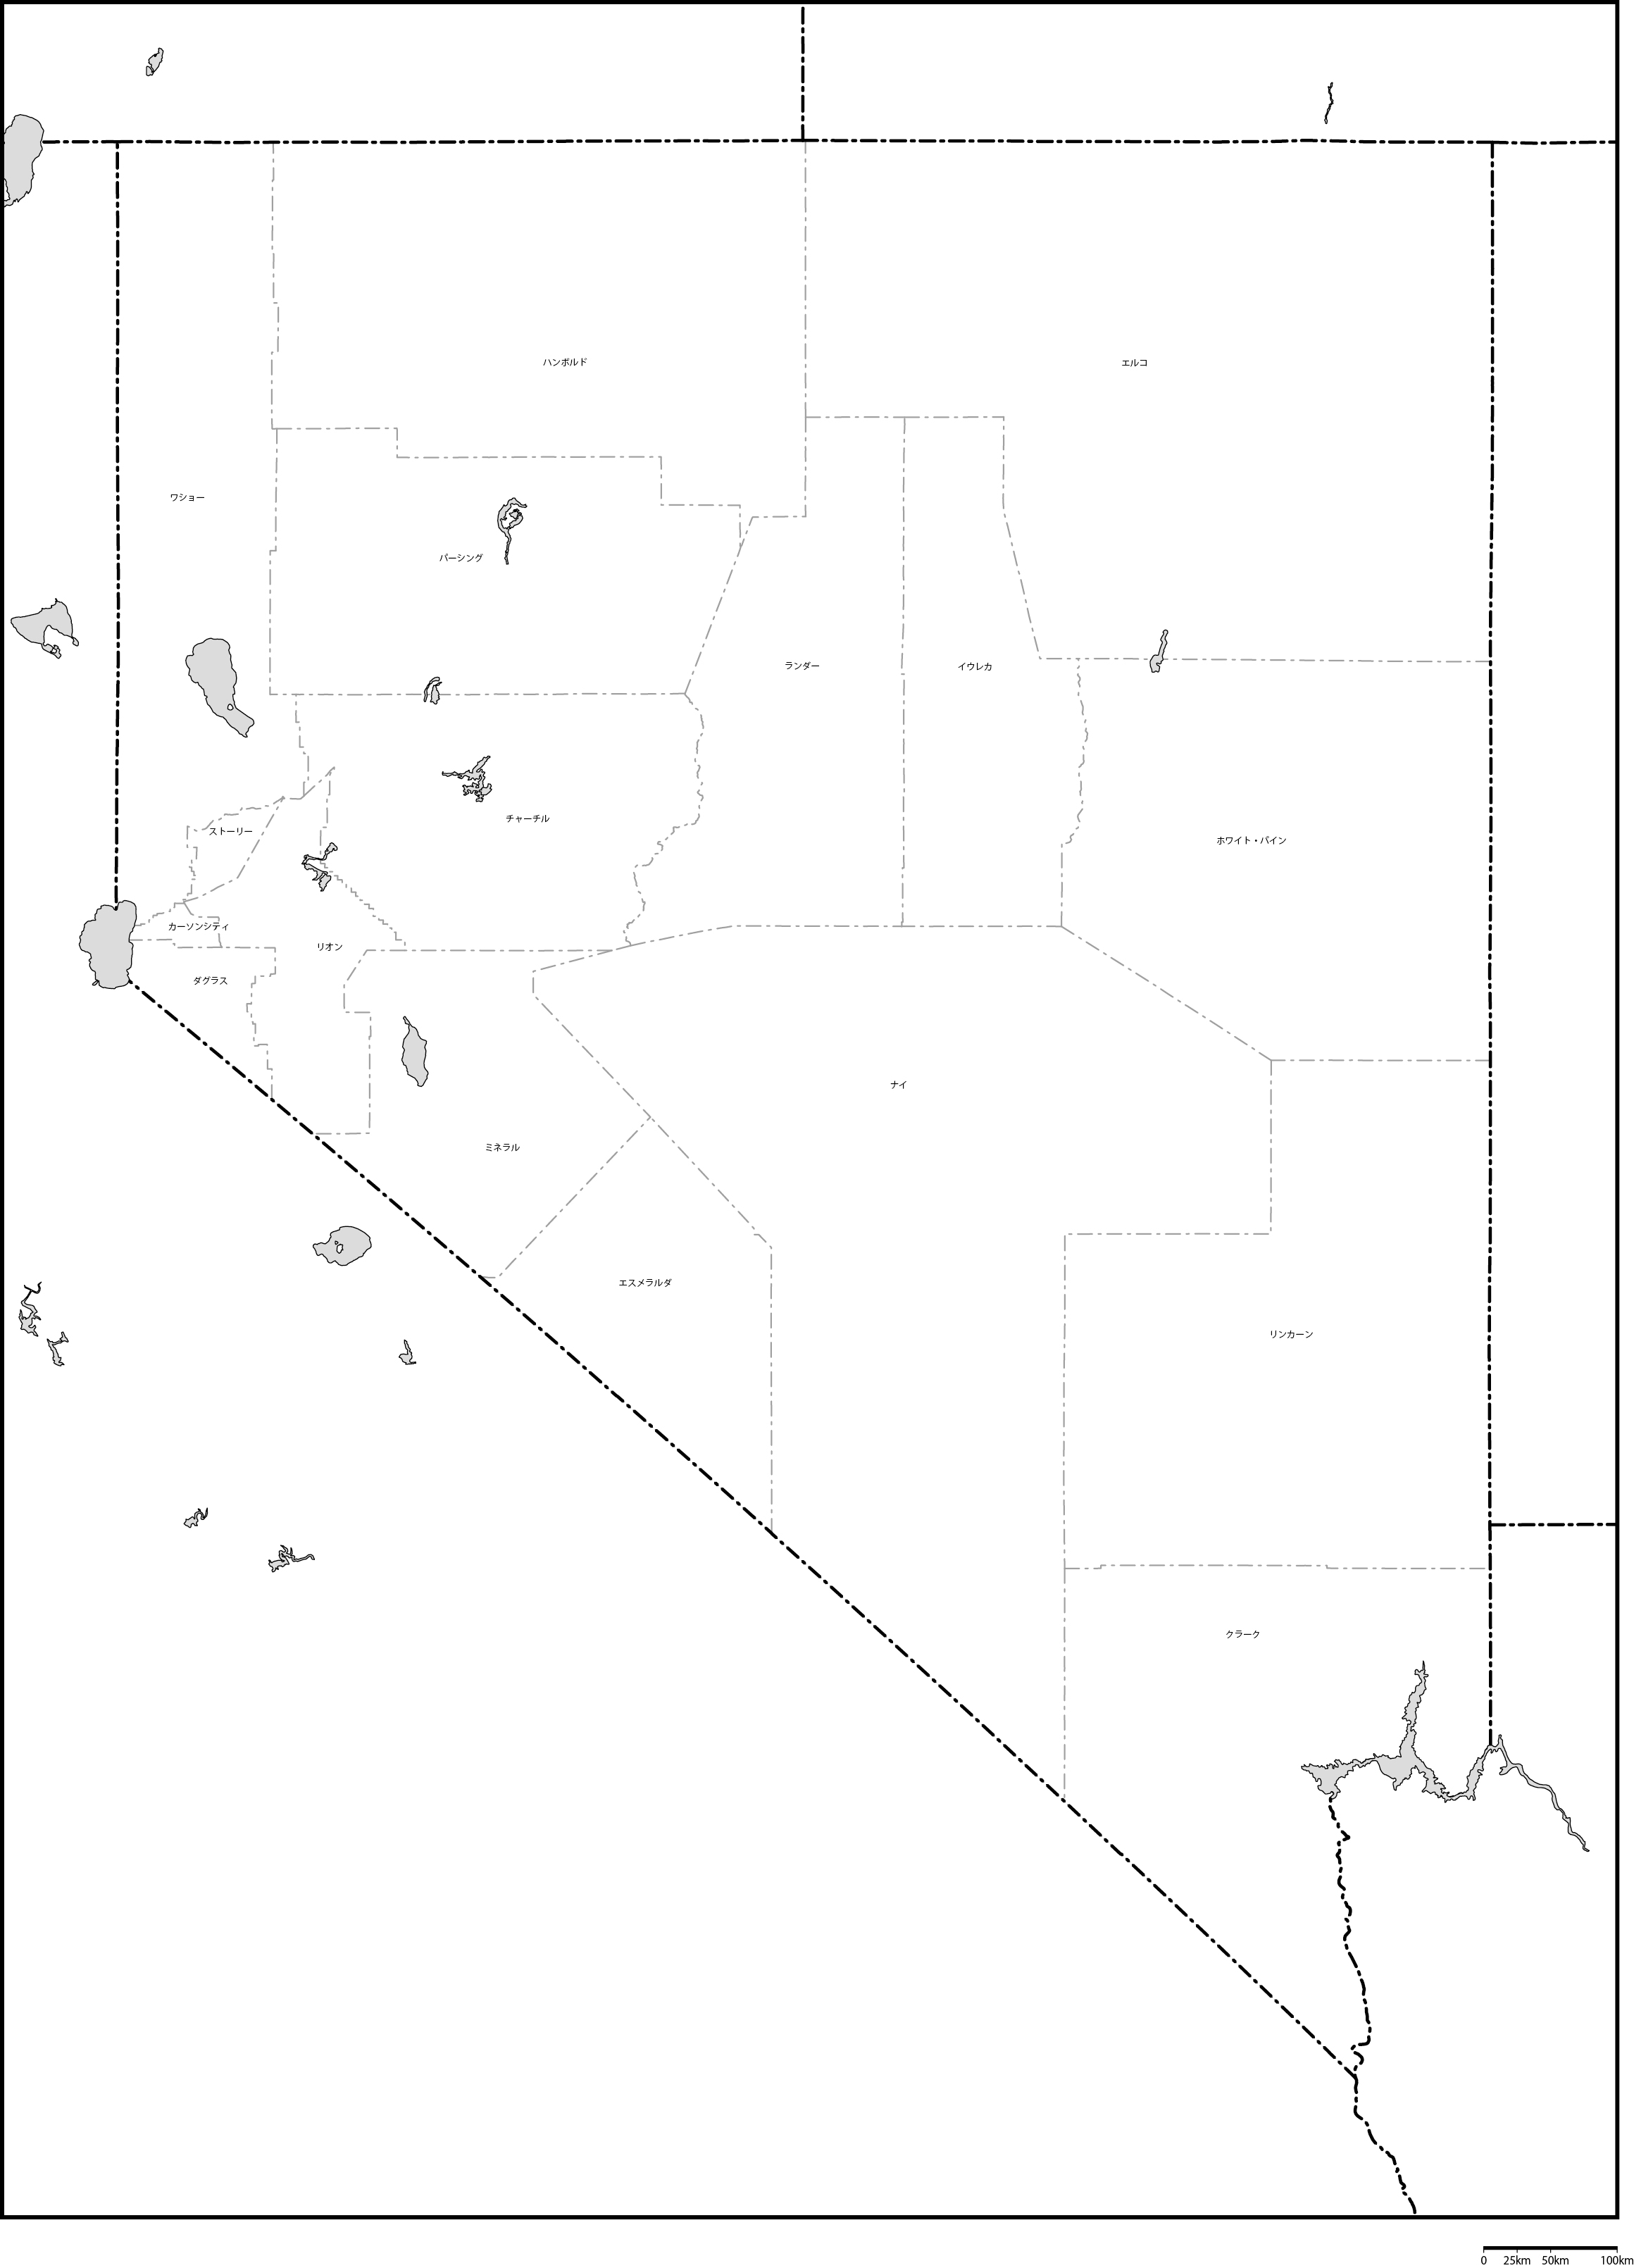 ネバダ州郡分け地図郡名あり(日本語)フリーデータの画像